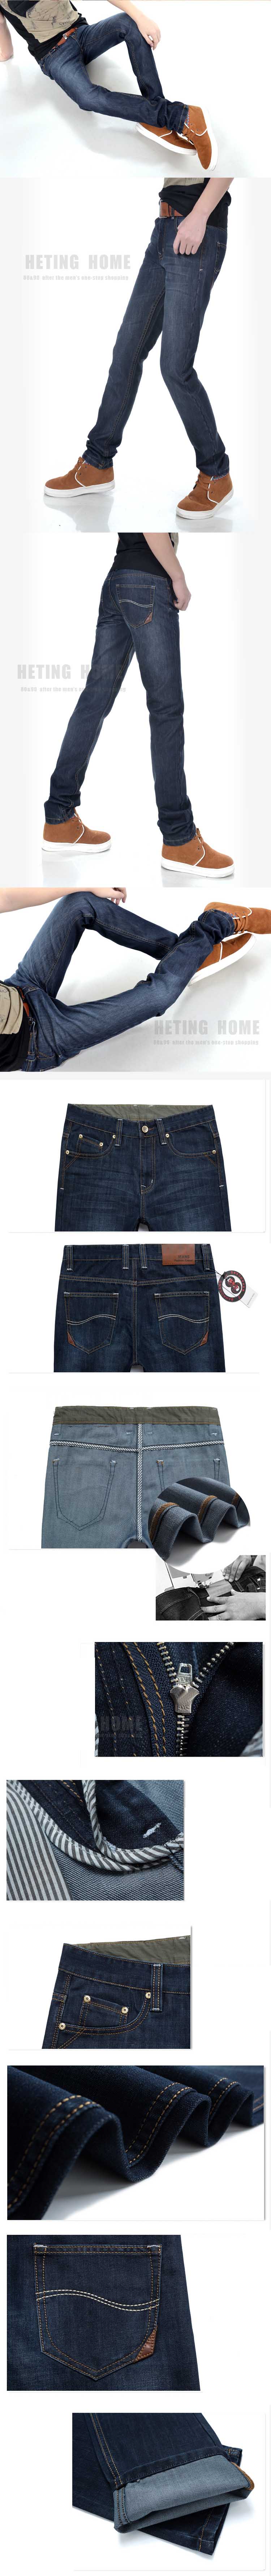 cari celana jeans pria model pensil ? bahan berkualitas dengan ratusan koleksi jeans pria , klik dan pesan online disini